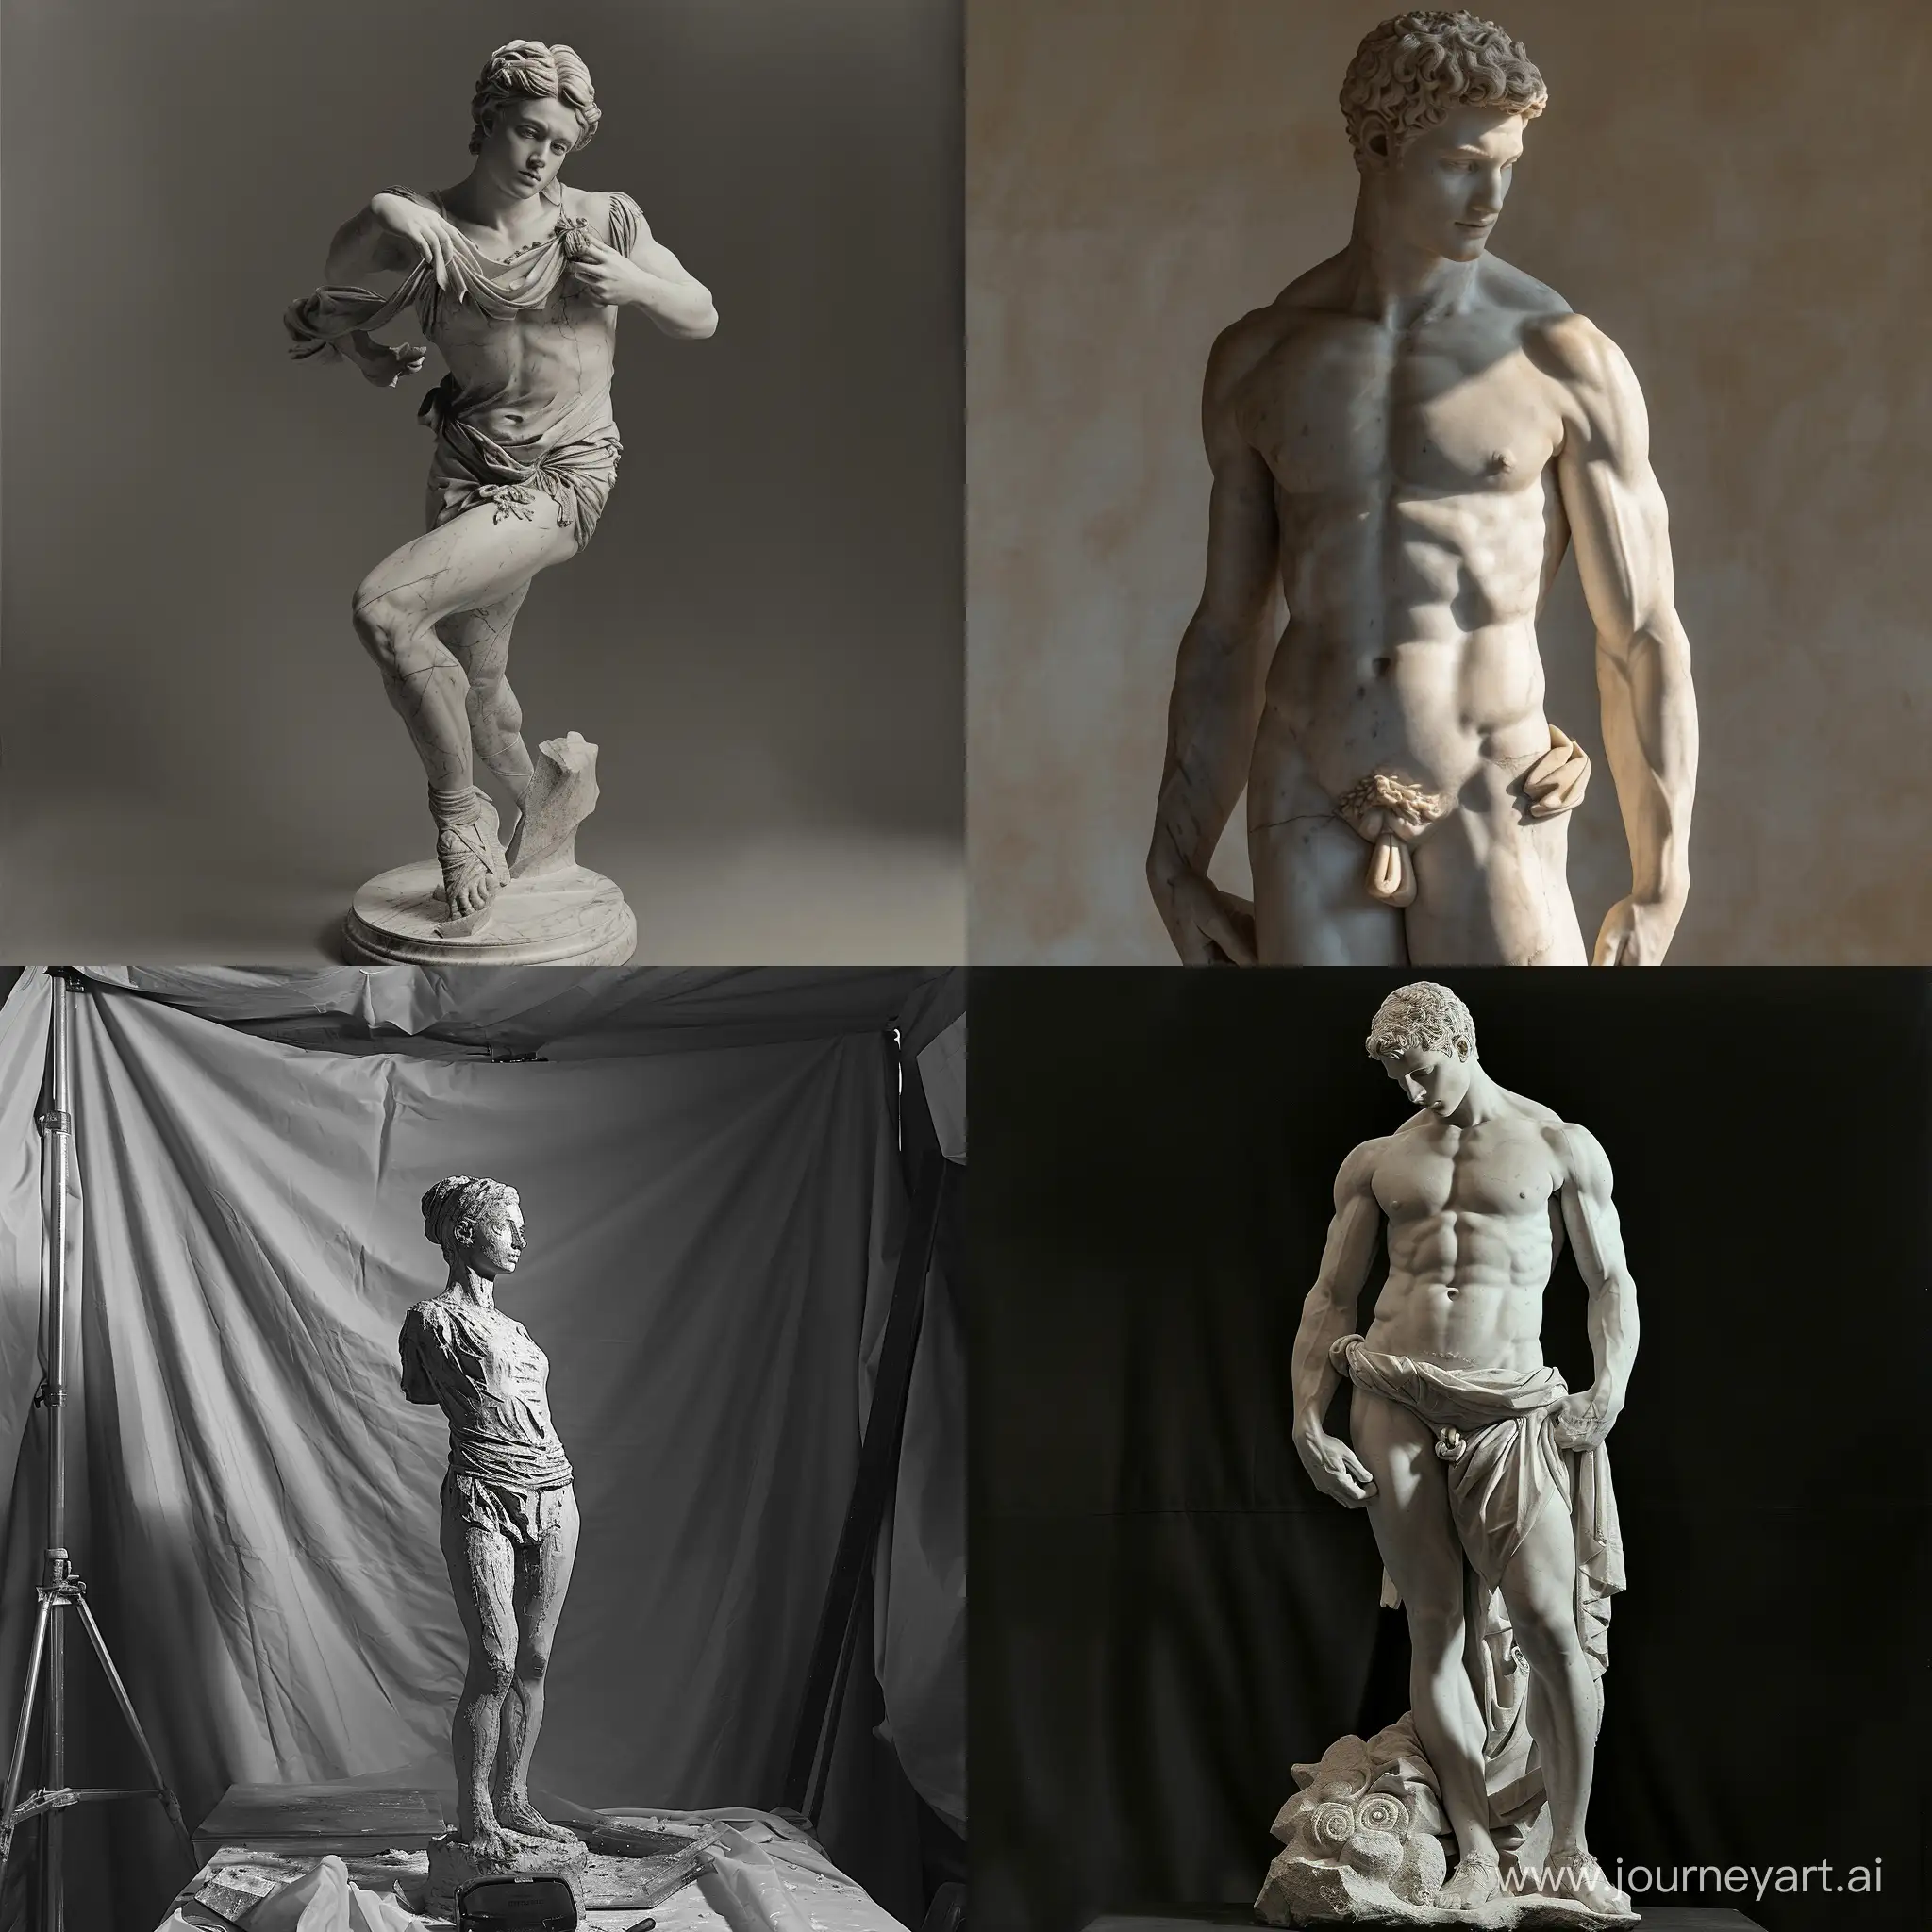 Sydney-Sweeney-Sculpture-by-Michelangelo-Exquisite-FullBody-Art